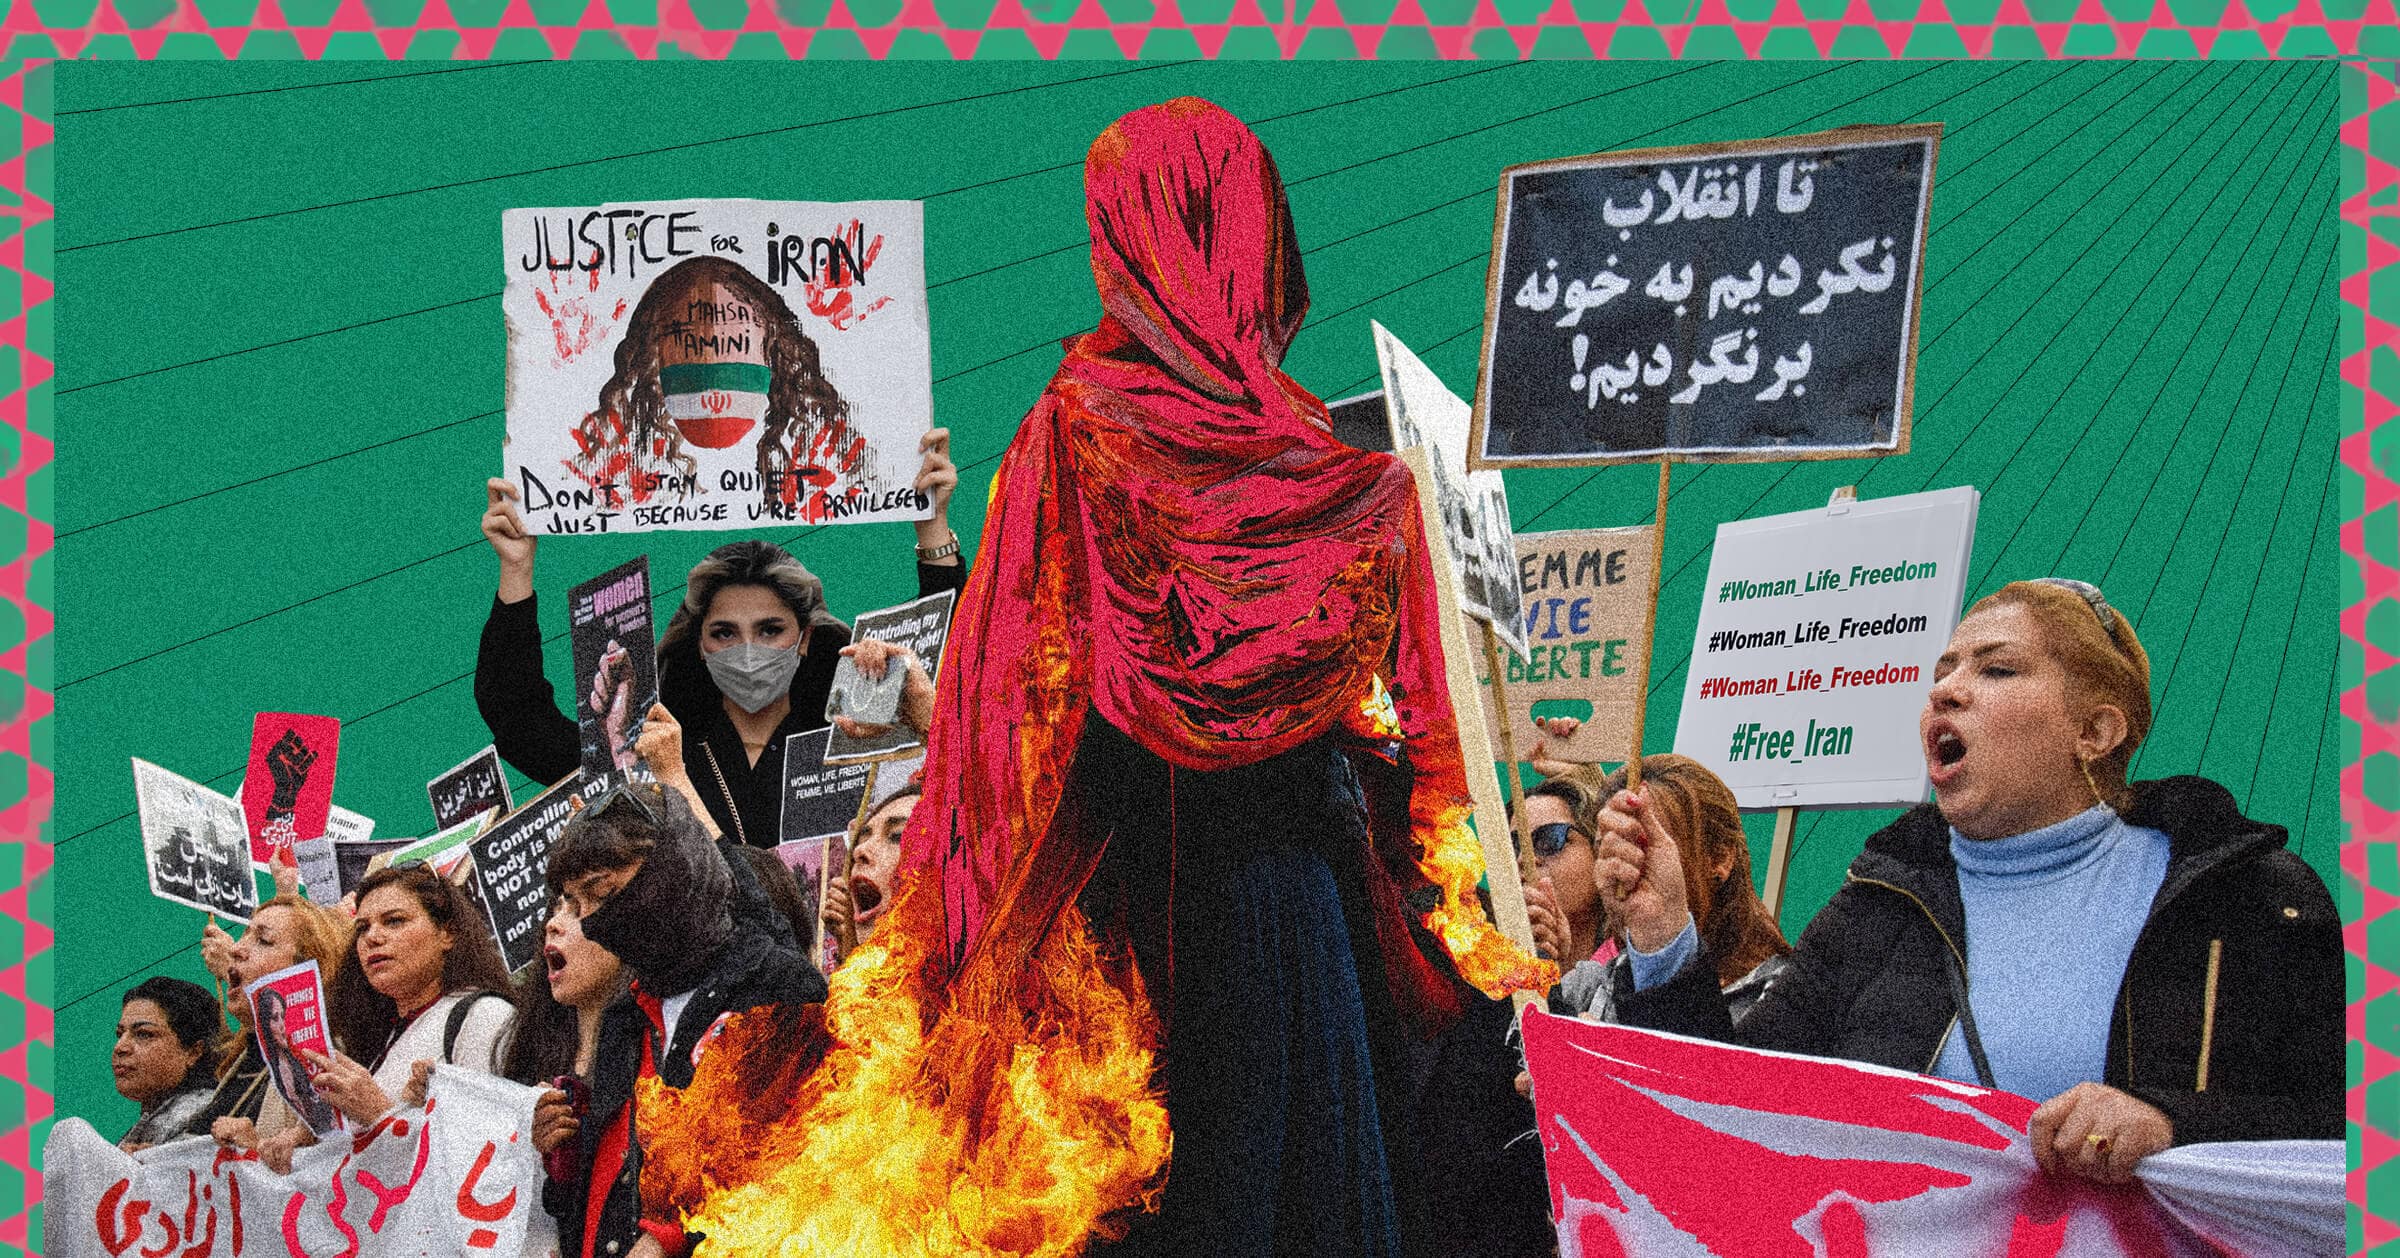 ผู้หญิงอิหร่านนำประท้วงใหญ่ในรอบ 40 ปี เรียกร้องสิทธิสตรี เสรีภาพ และขับไล่รัฐบาลเผด็จการ